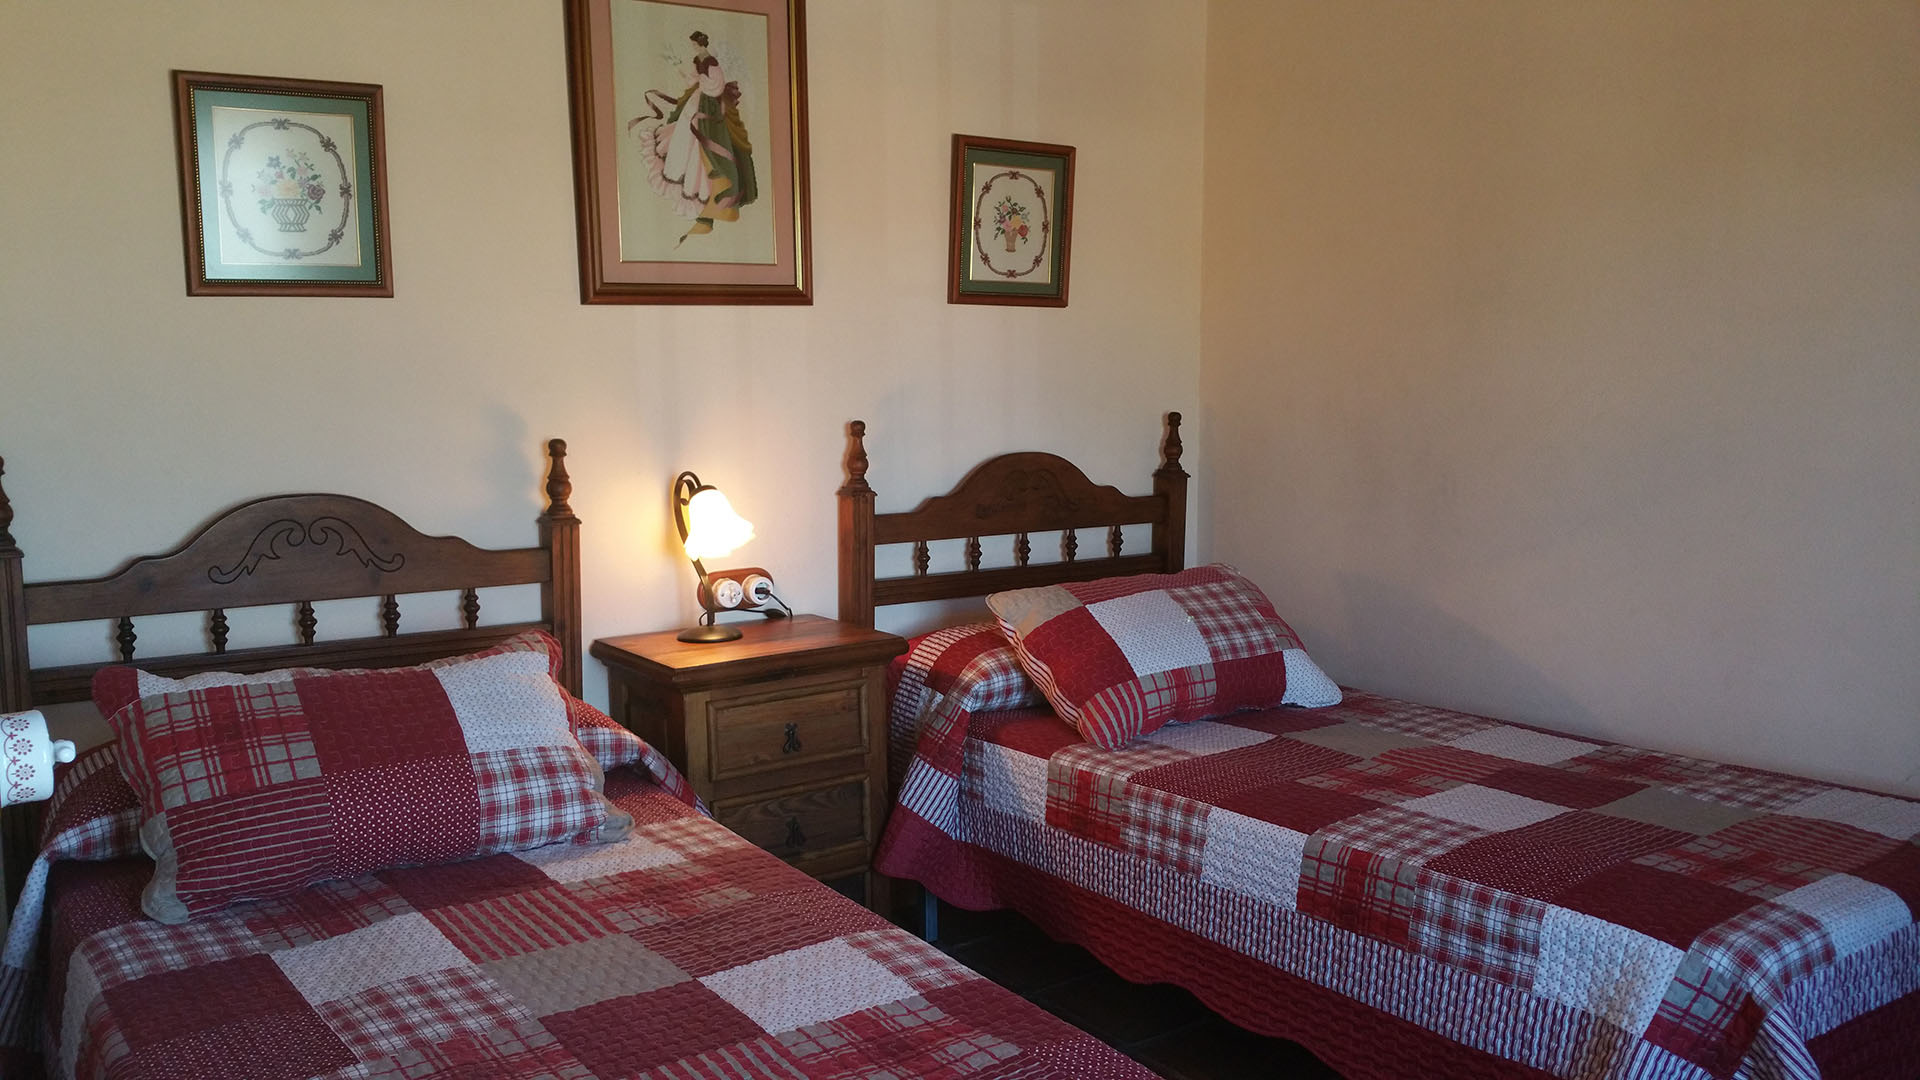 Un dormitorio con dos camas individuales y una mesitas de noche con lamparita. Decoración rusticas de madera.